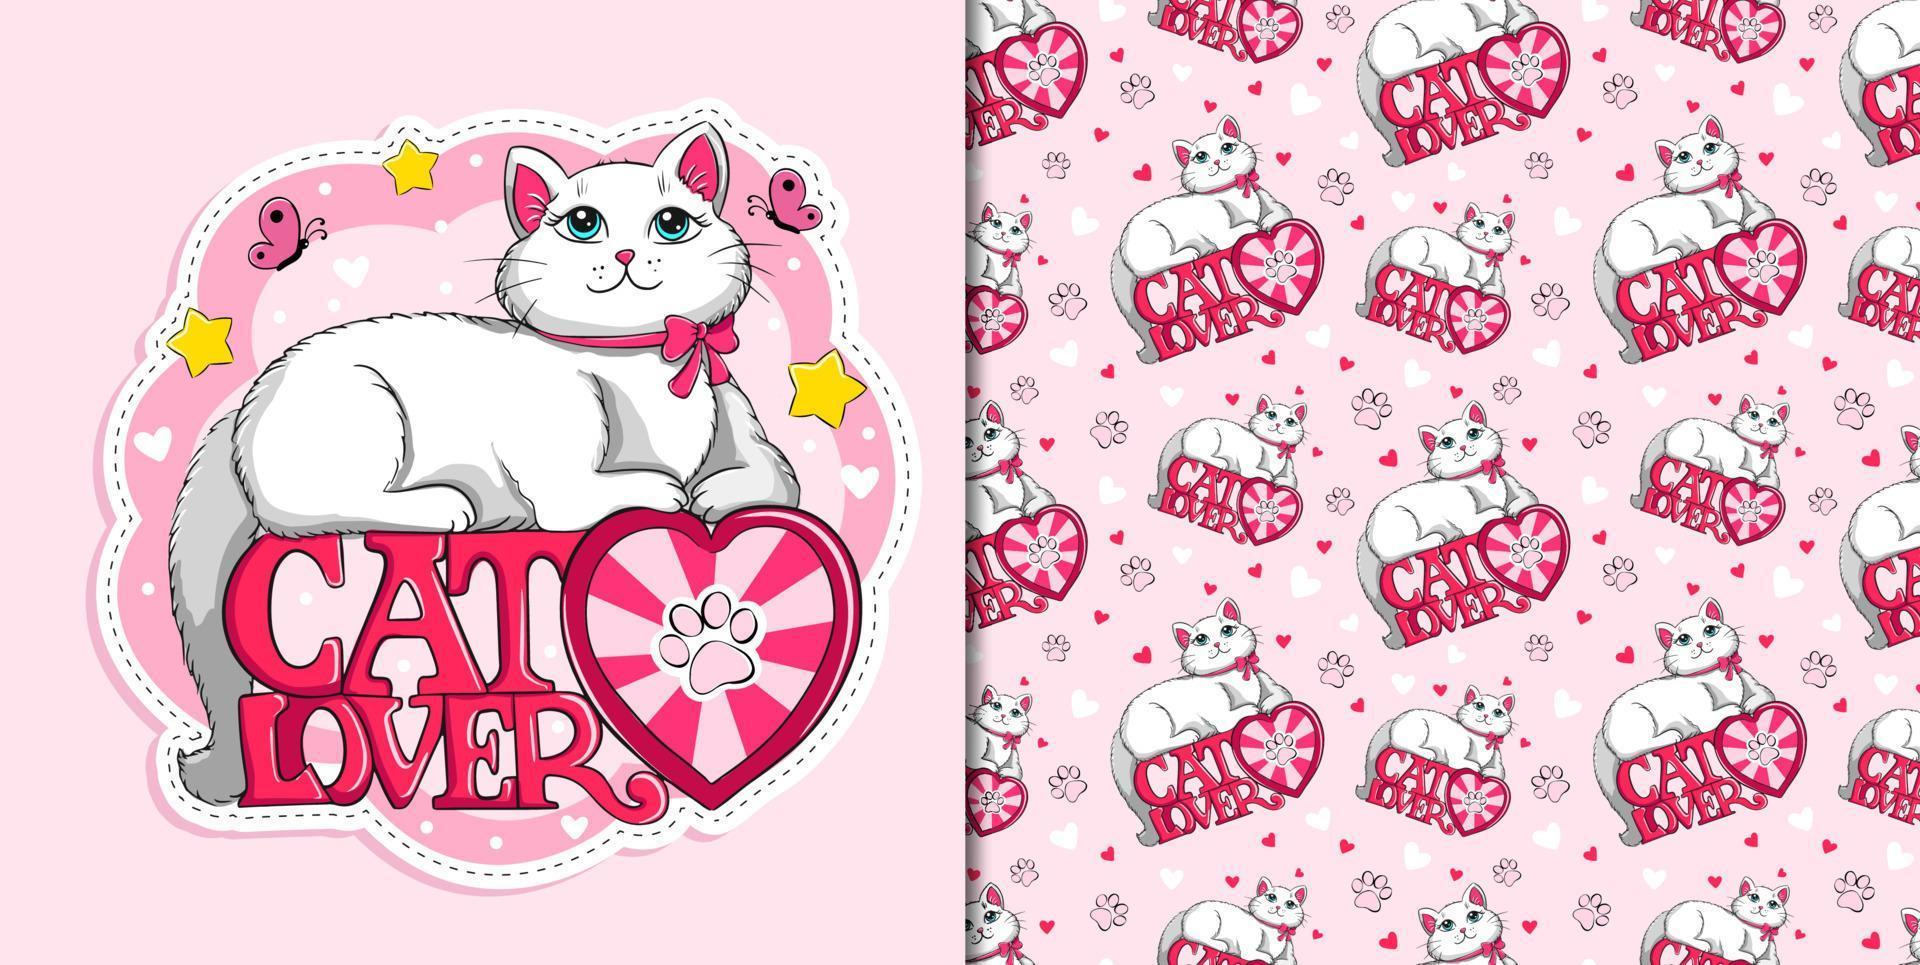 eslogan de amante de los gatos con un lindo parche de gato blanco y esponjoso en el patrón de dibujos animados de vectores de ropa para papel tapiz, diseño de tela para niños